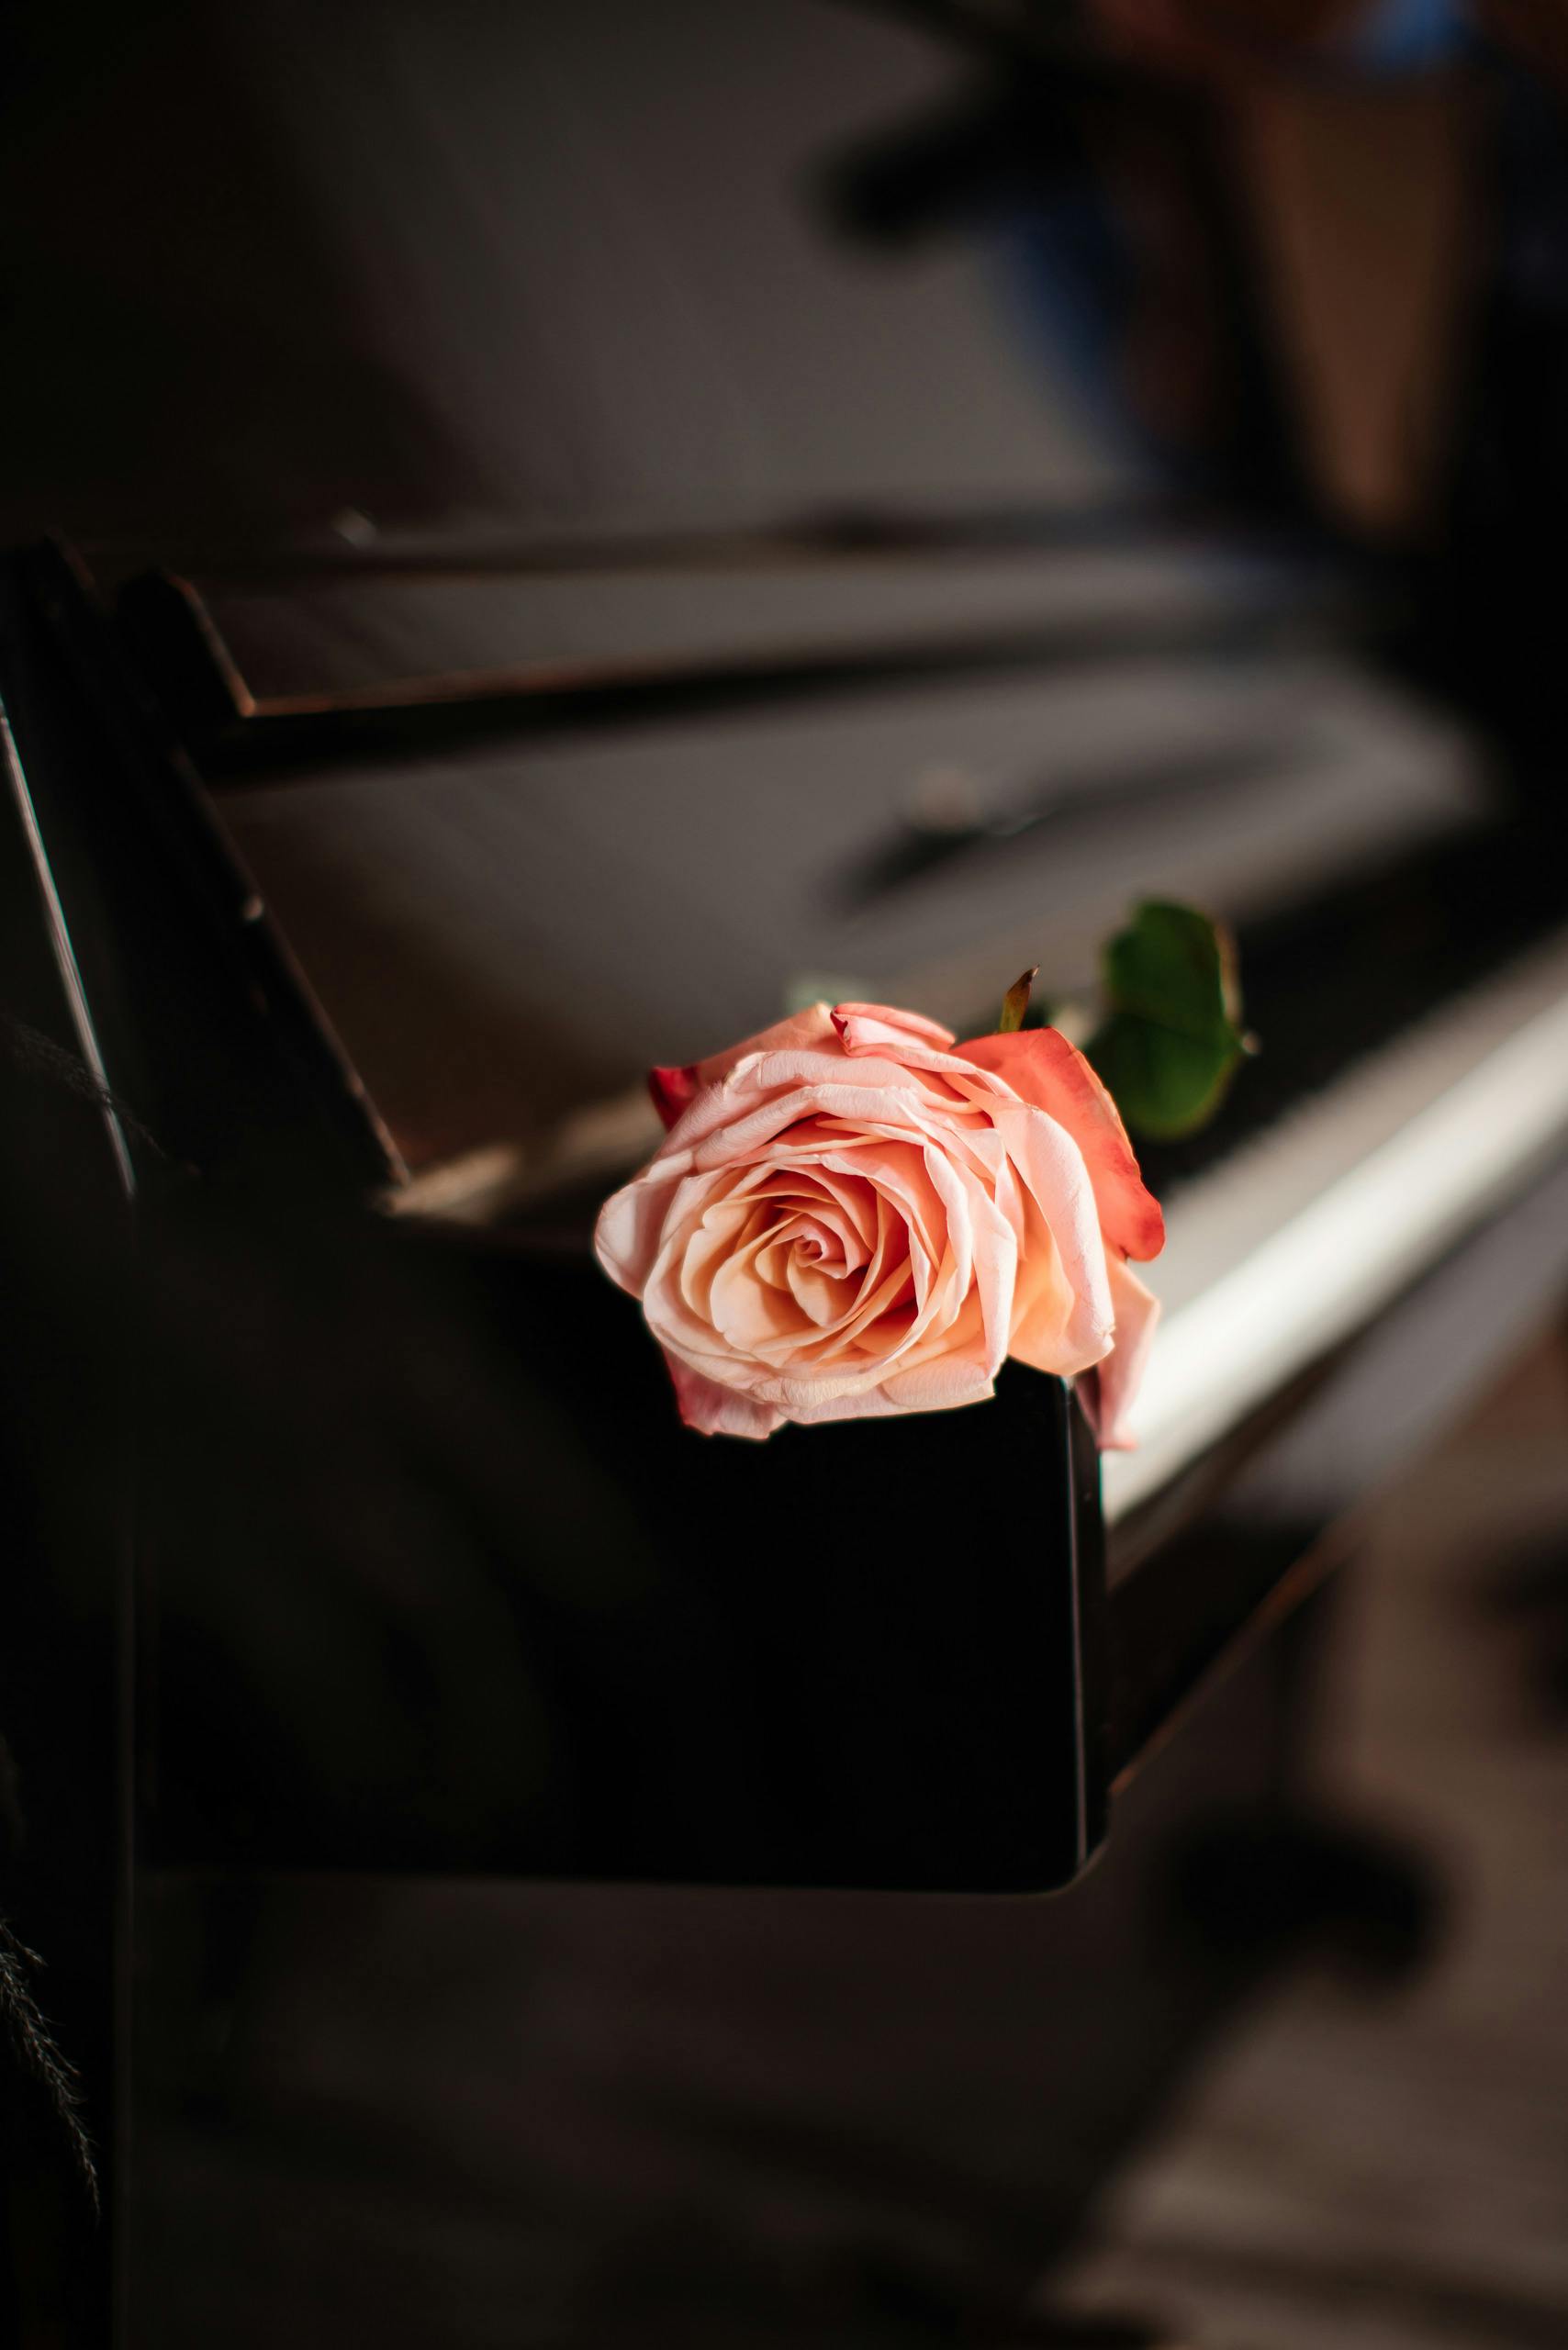 rose piano wallpaper